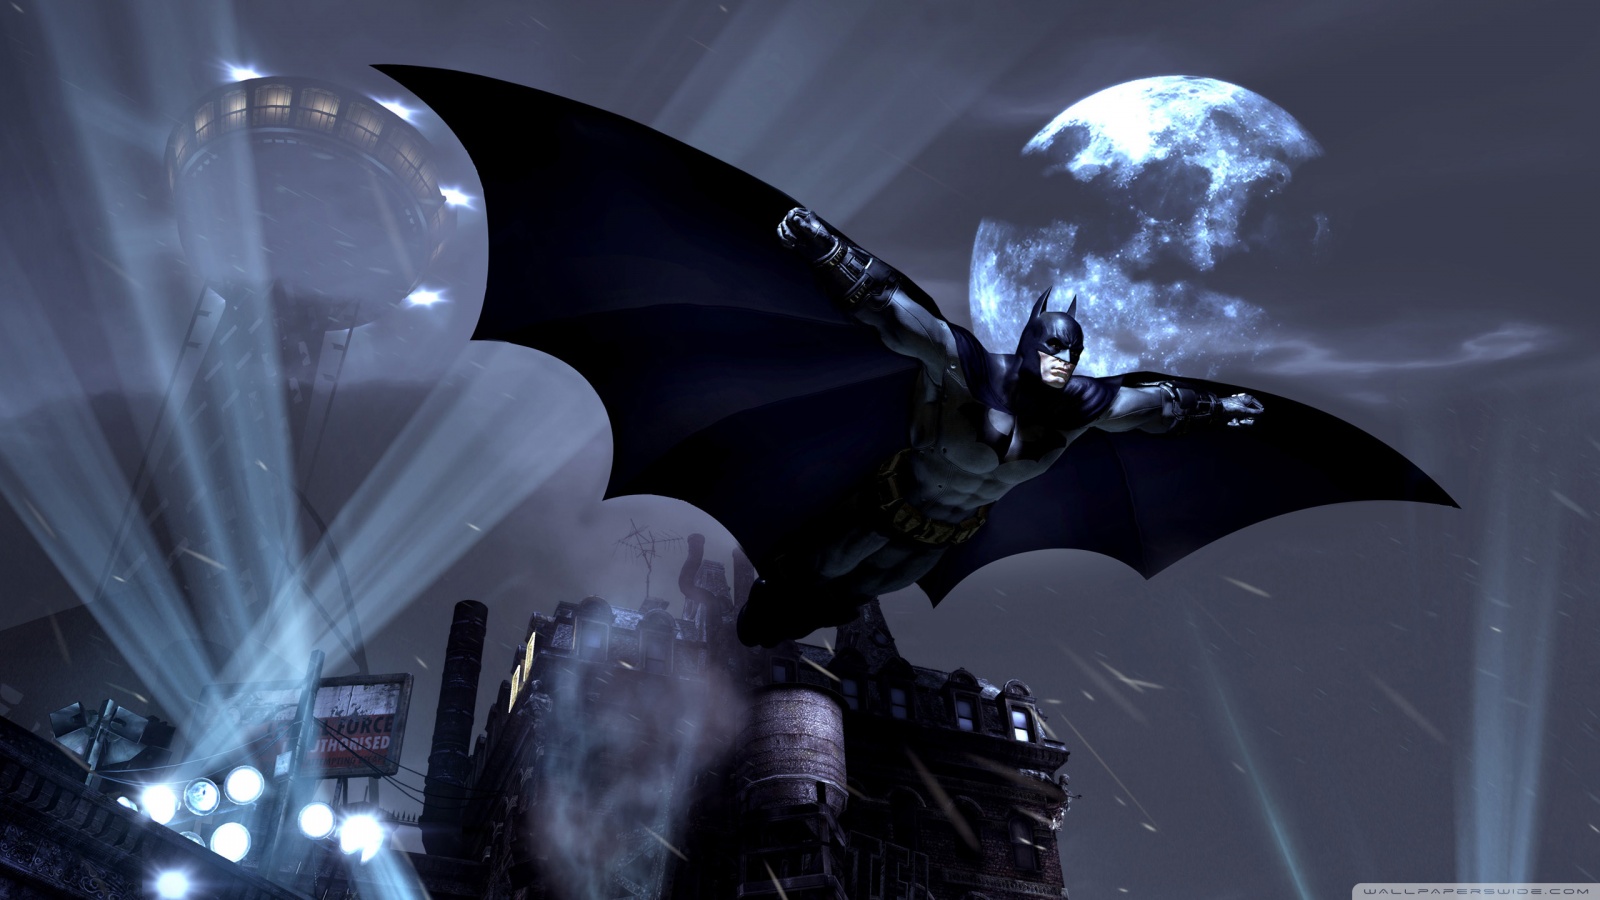 fondo de pantalla de batman 1080p,hombre murciélago,personaje de ficción,cg artwork,espacio,en blanco y negro